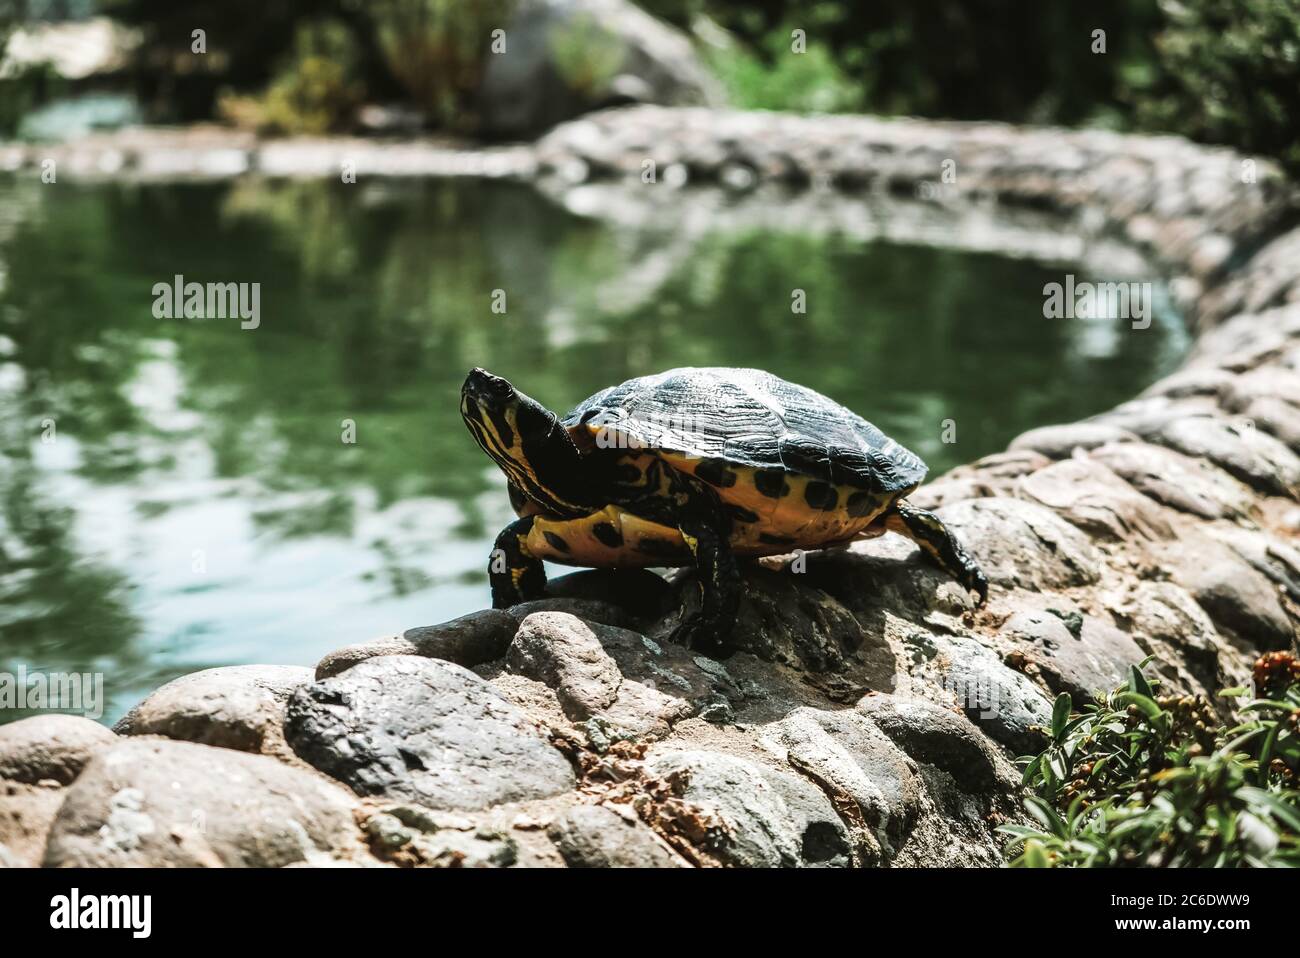 Nahaufnahme vergrößerte Ansicht einer Schildkröte, die entlang der Grenze eines Sees in einem spanischen Park geht. Entspannte wilde Kreaturen sonnen sich in Marbella. Stockfoto